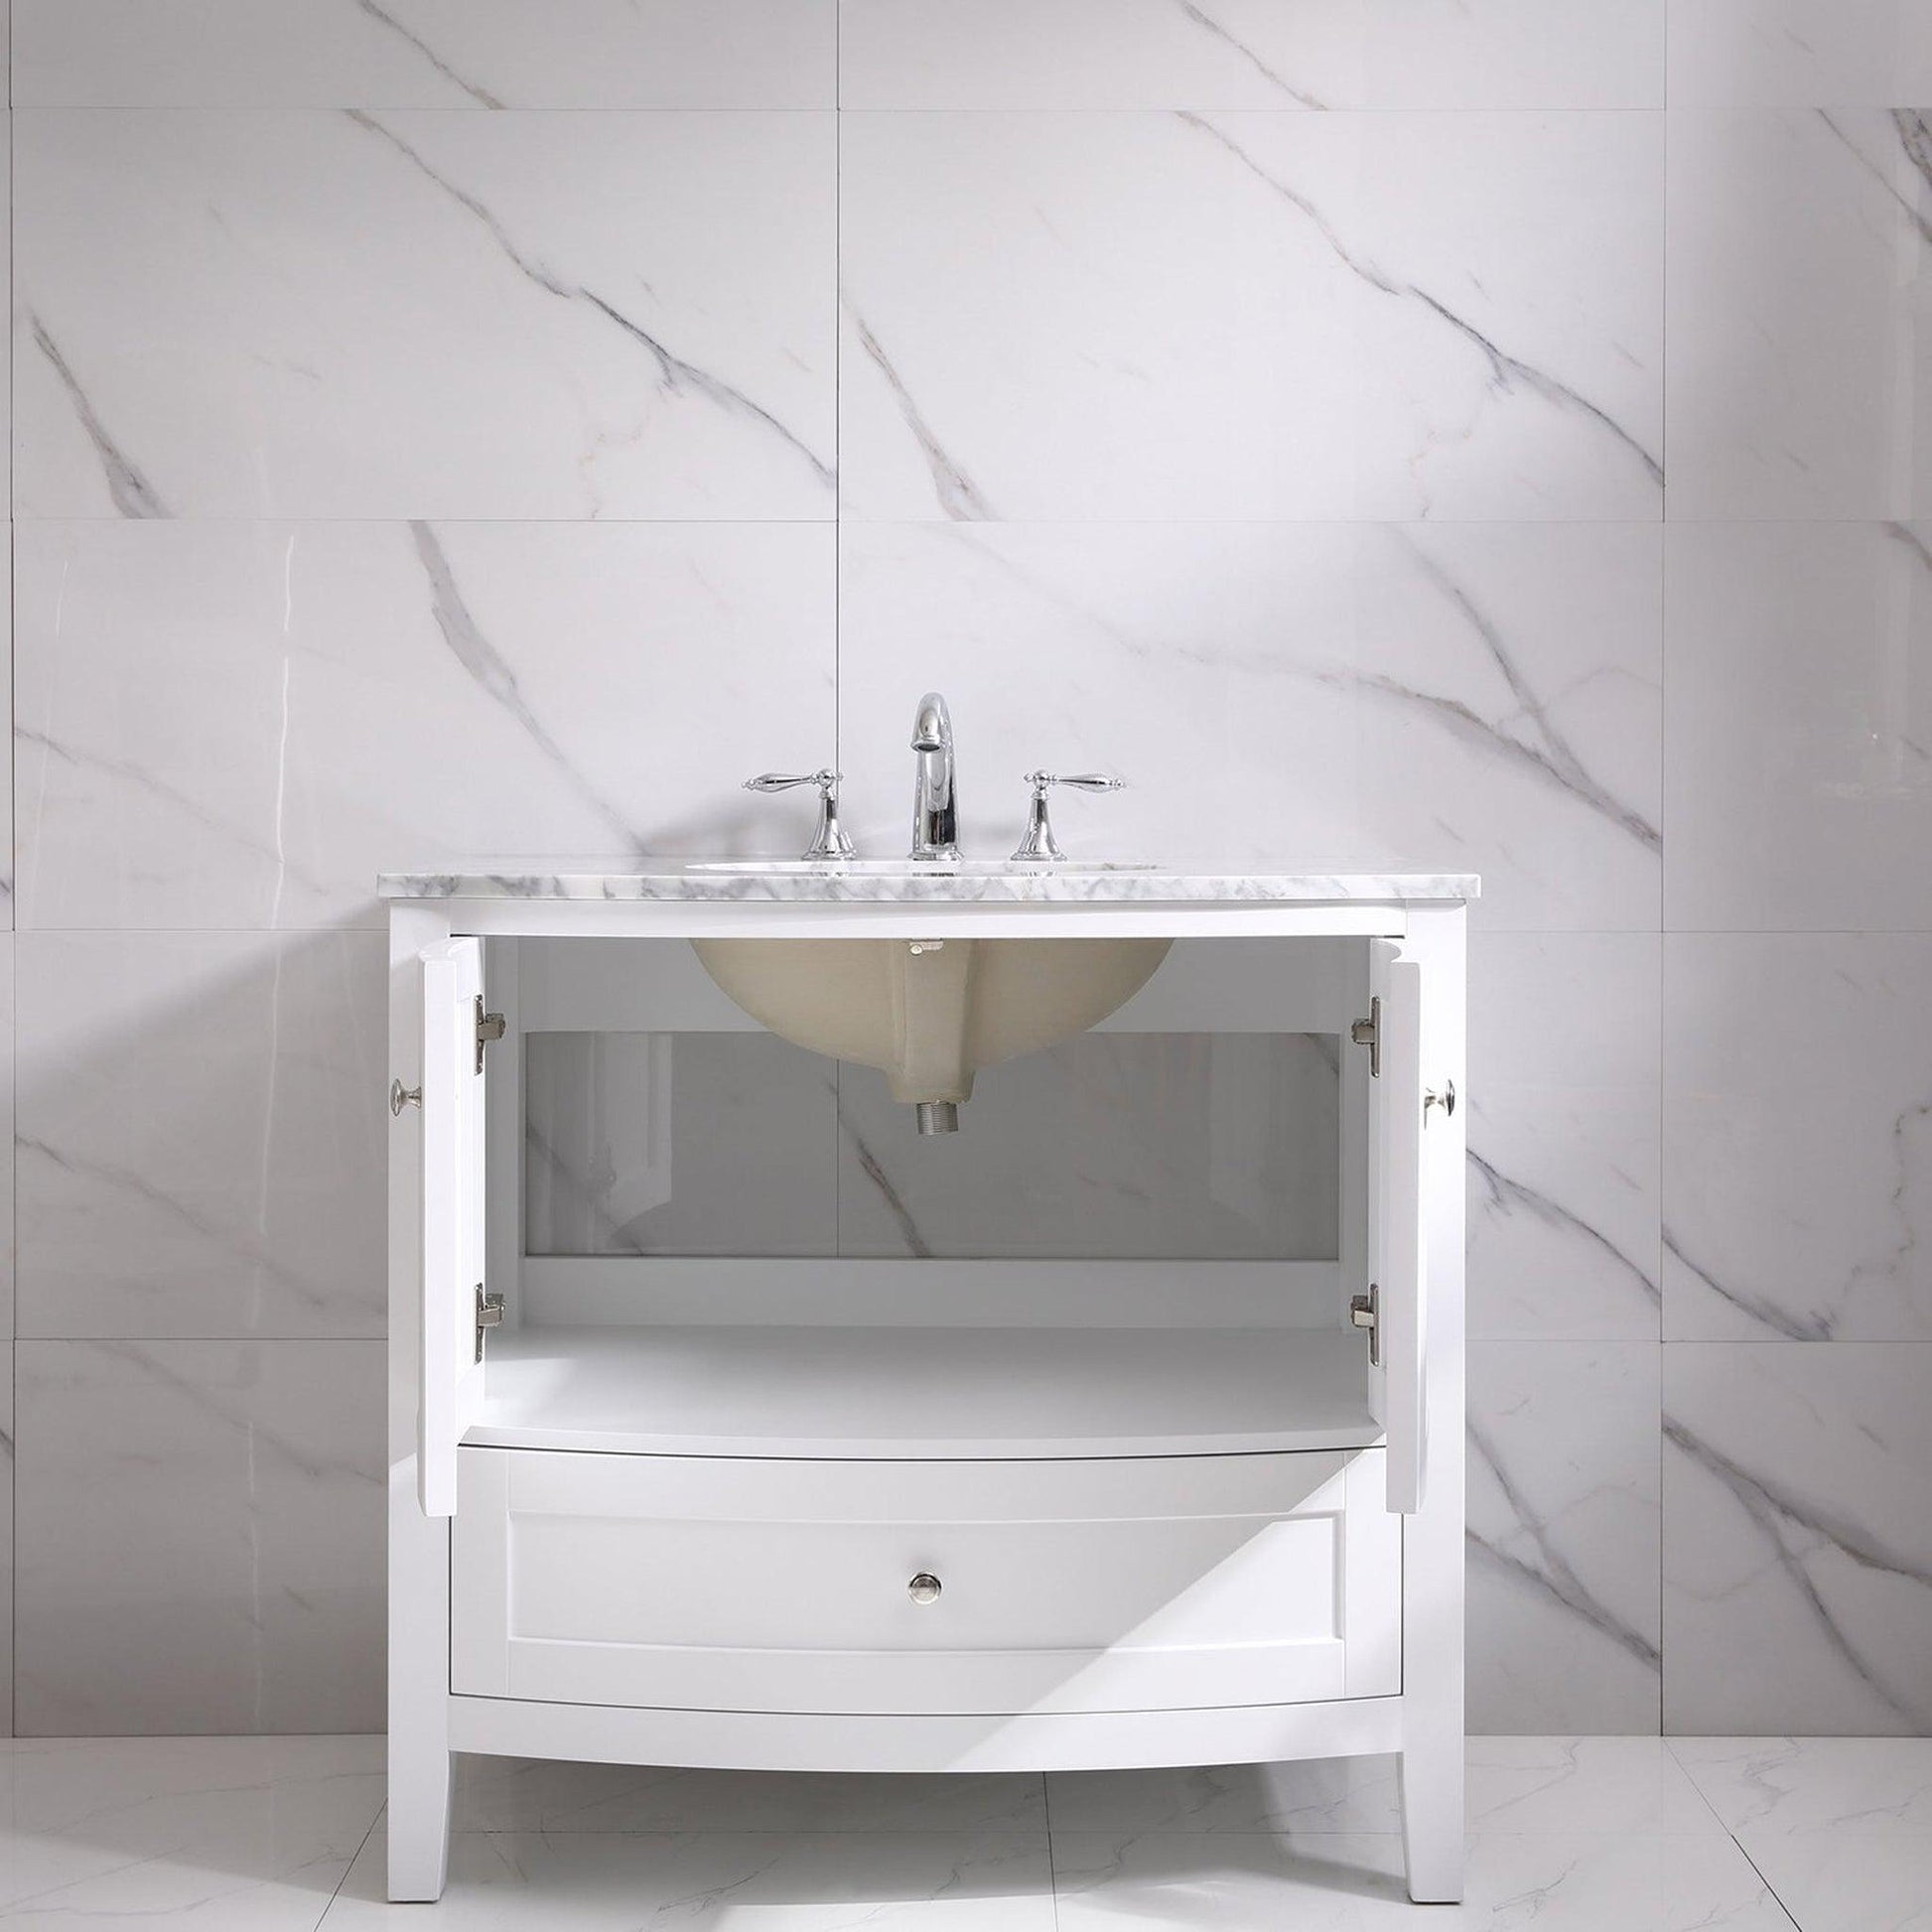 Eviva Stanton 36" x 35" White Freestanding Bathroom Vanity With Single Undermount Sink